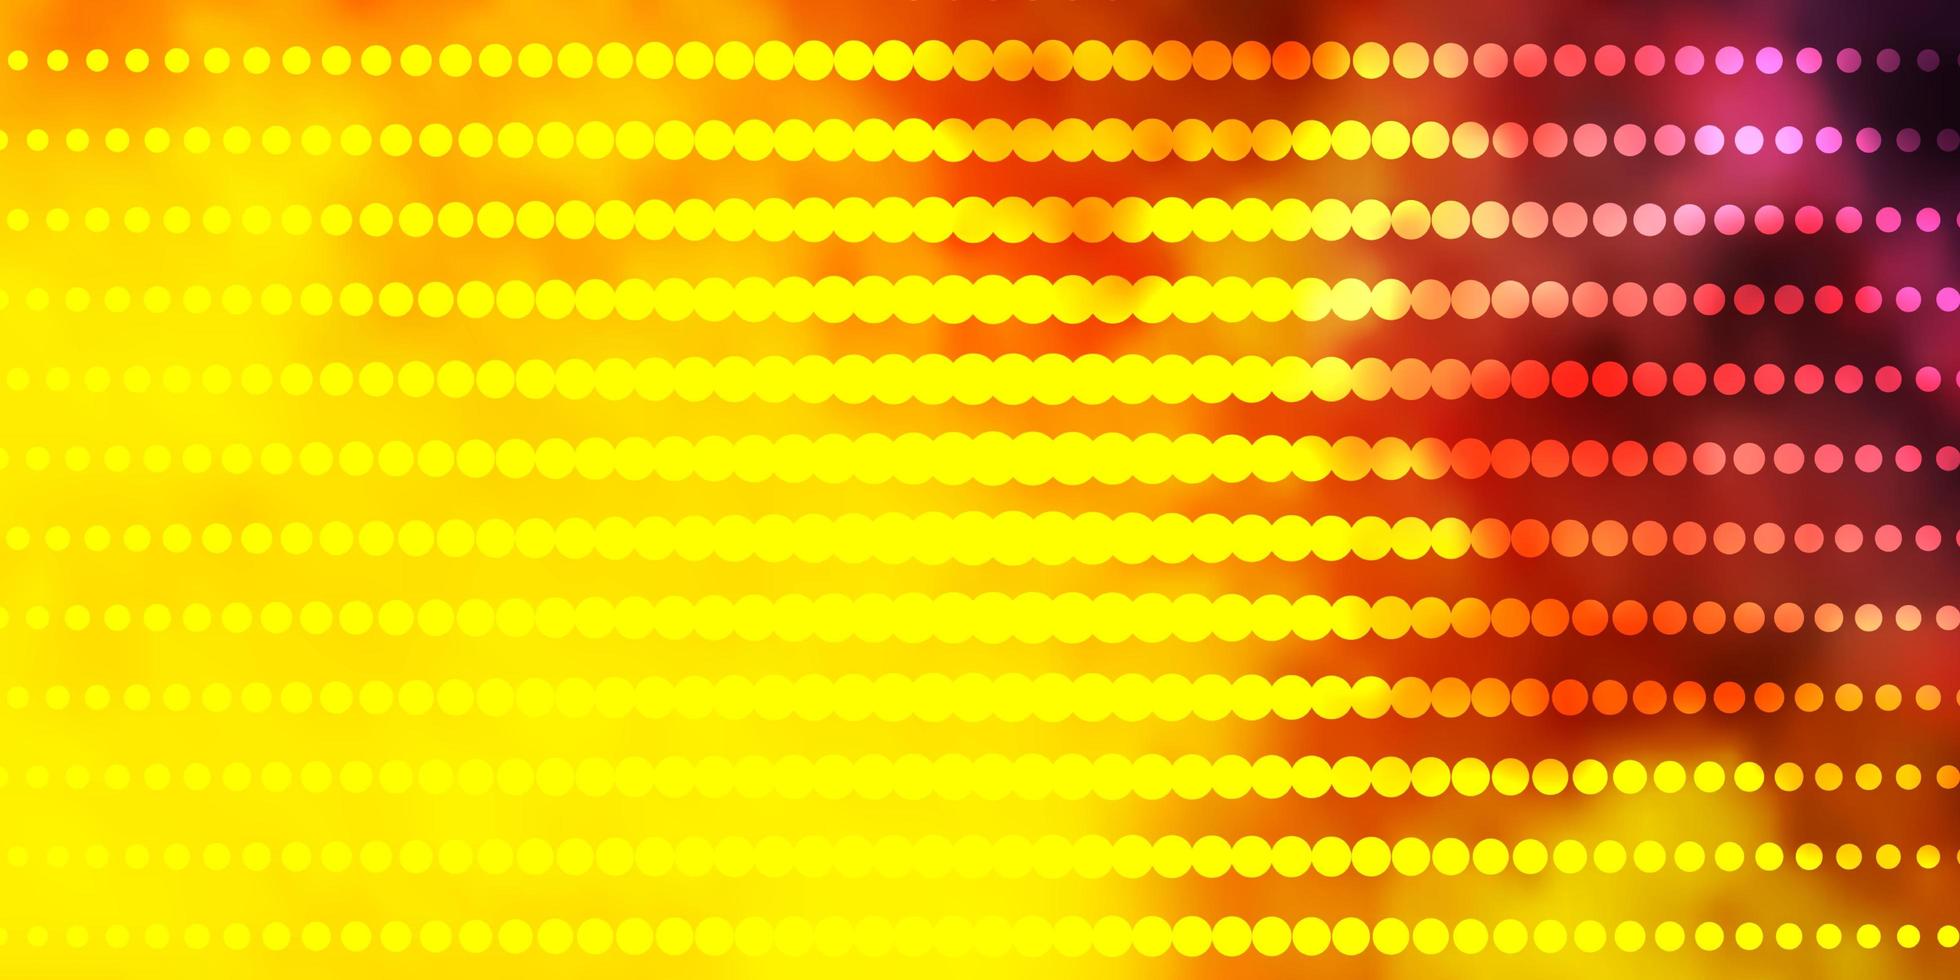 textura de vector rosa claro, amarillo con círculos